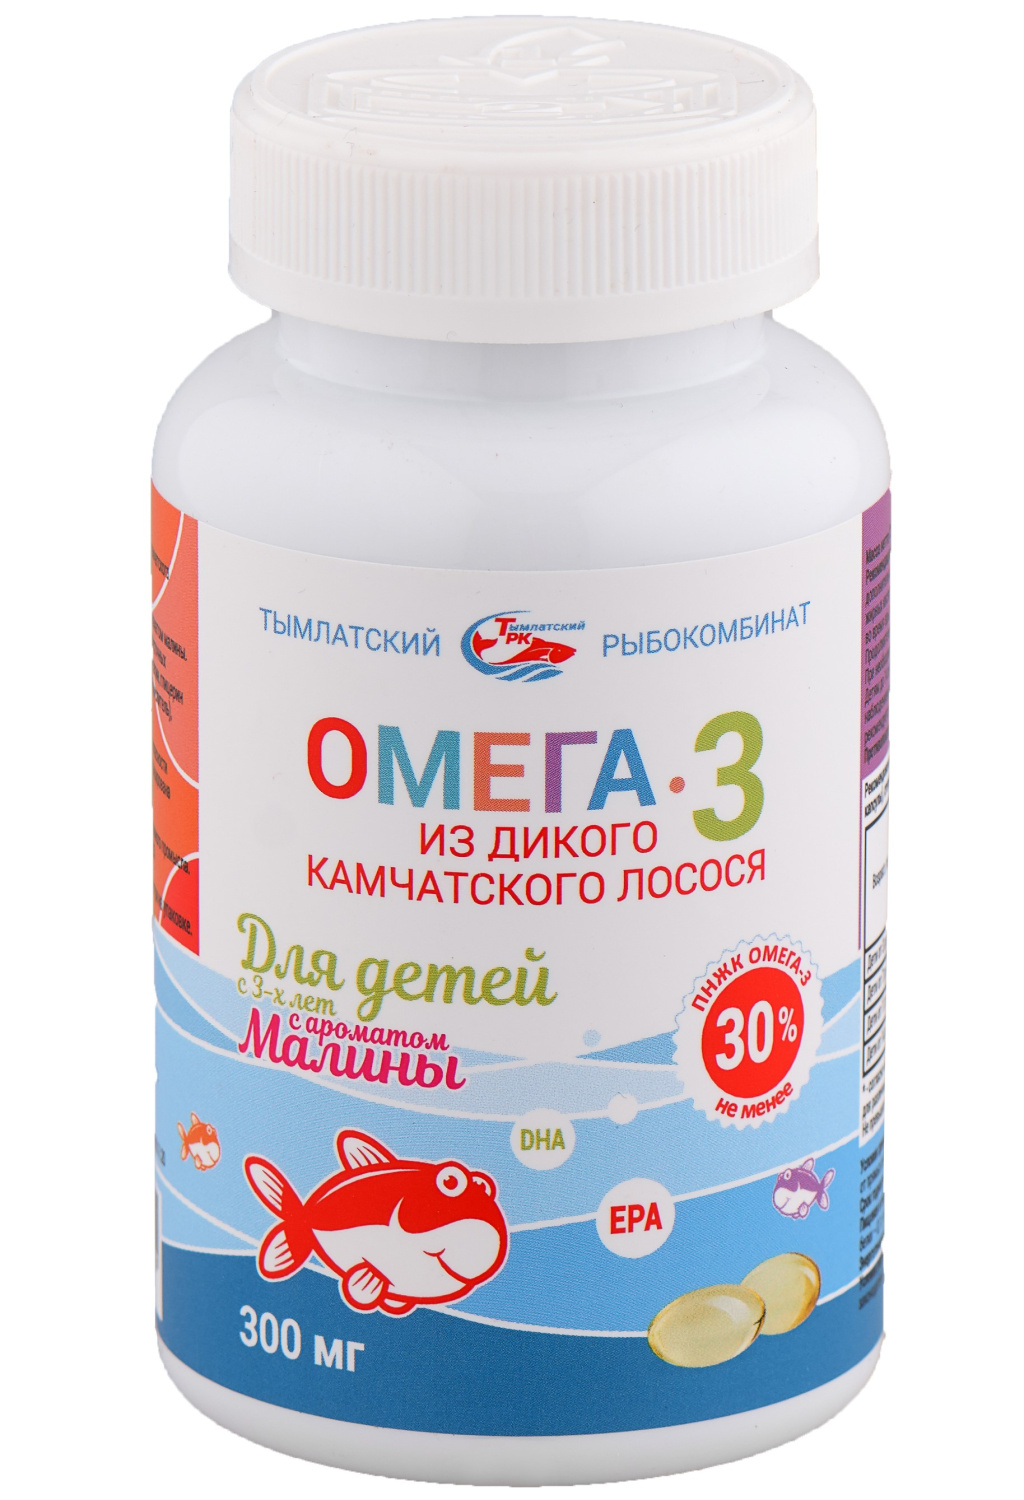 Омега-3 из дикого камчатского лосося для детей с 3-х лет (малина) Тымлатский рыбокомбинат (Salmoniсa), 250 капс. по 300 мг.